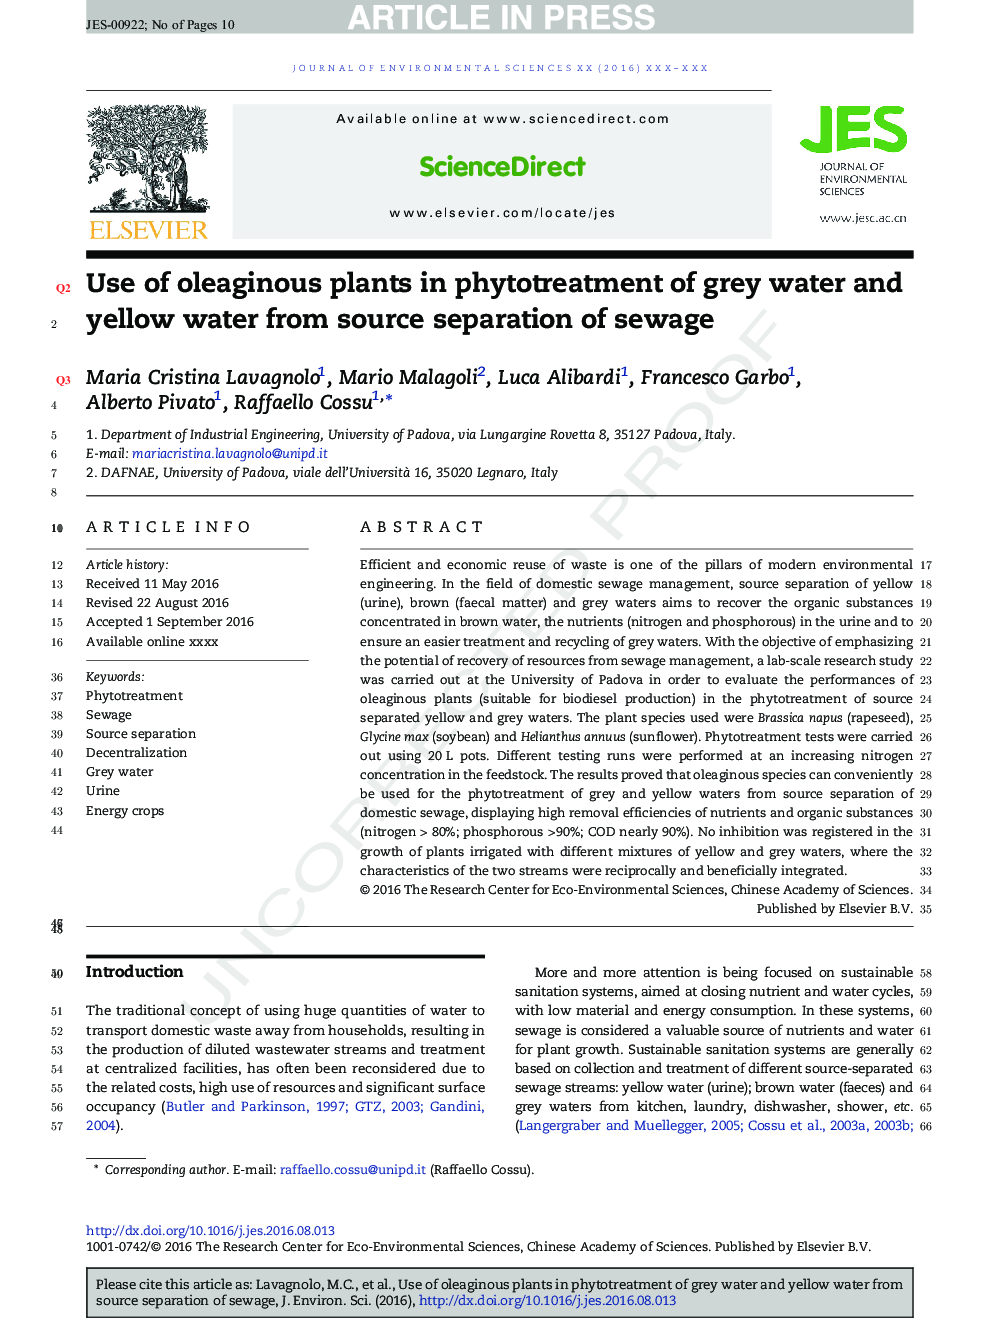 استفاده از گیاهان روغن زیتون در استفاده از گیاهان آب خاکستری و آب زرد از جداسازی منابع فاضلاب 